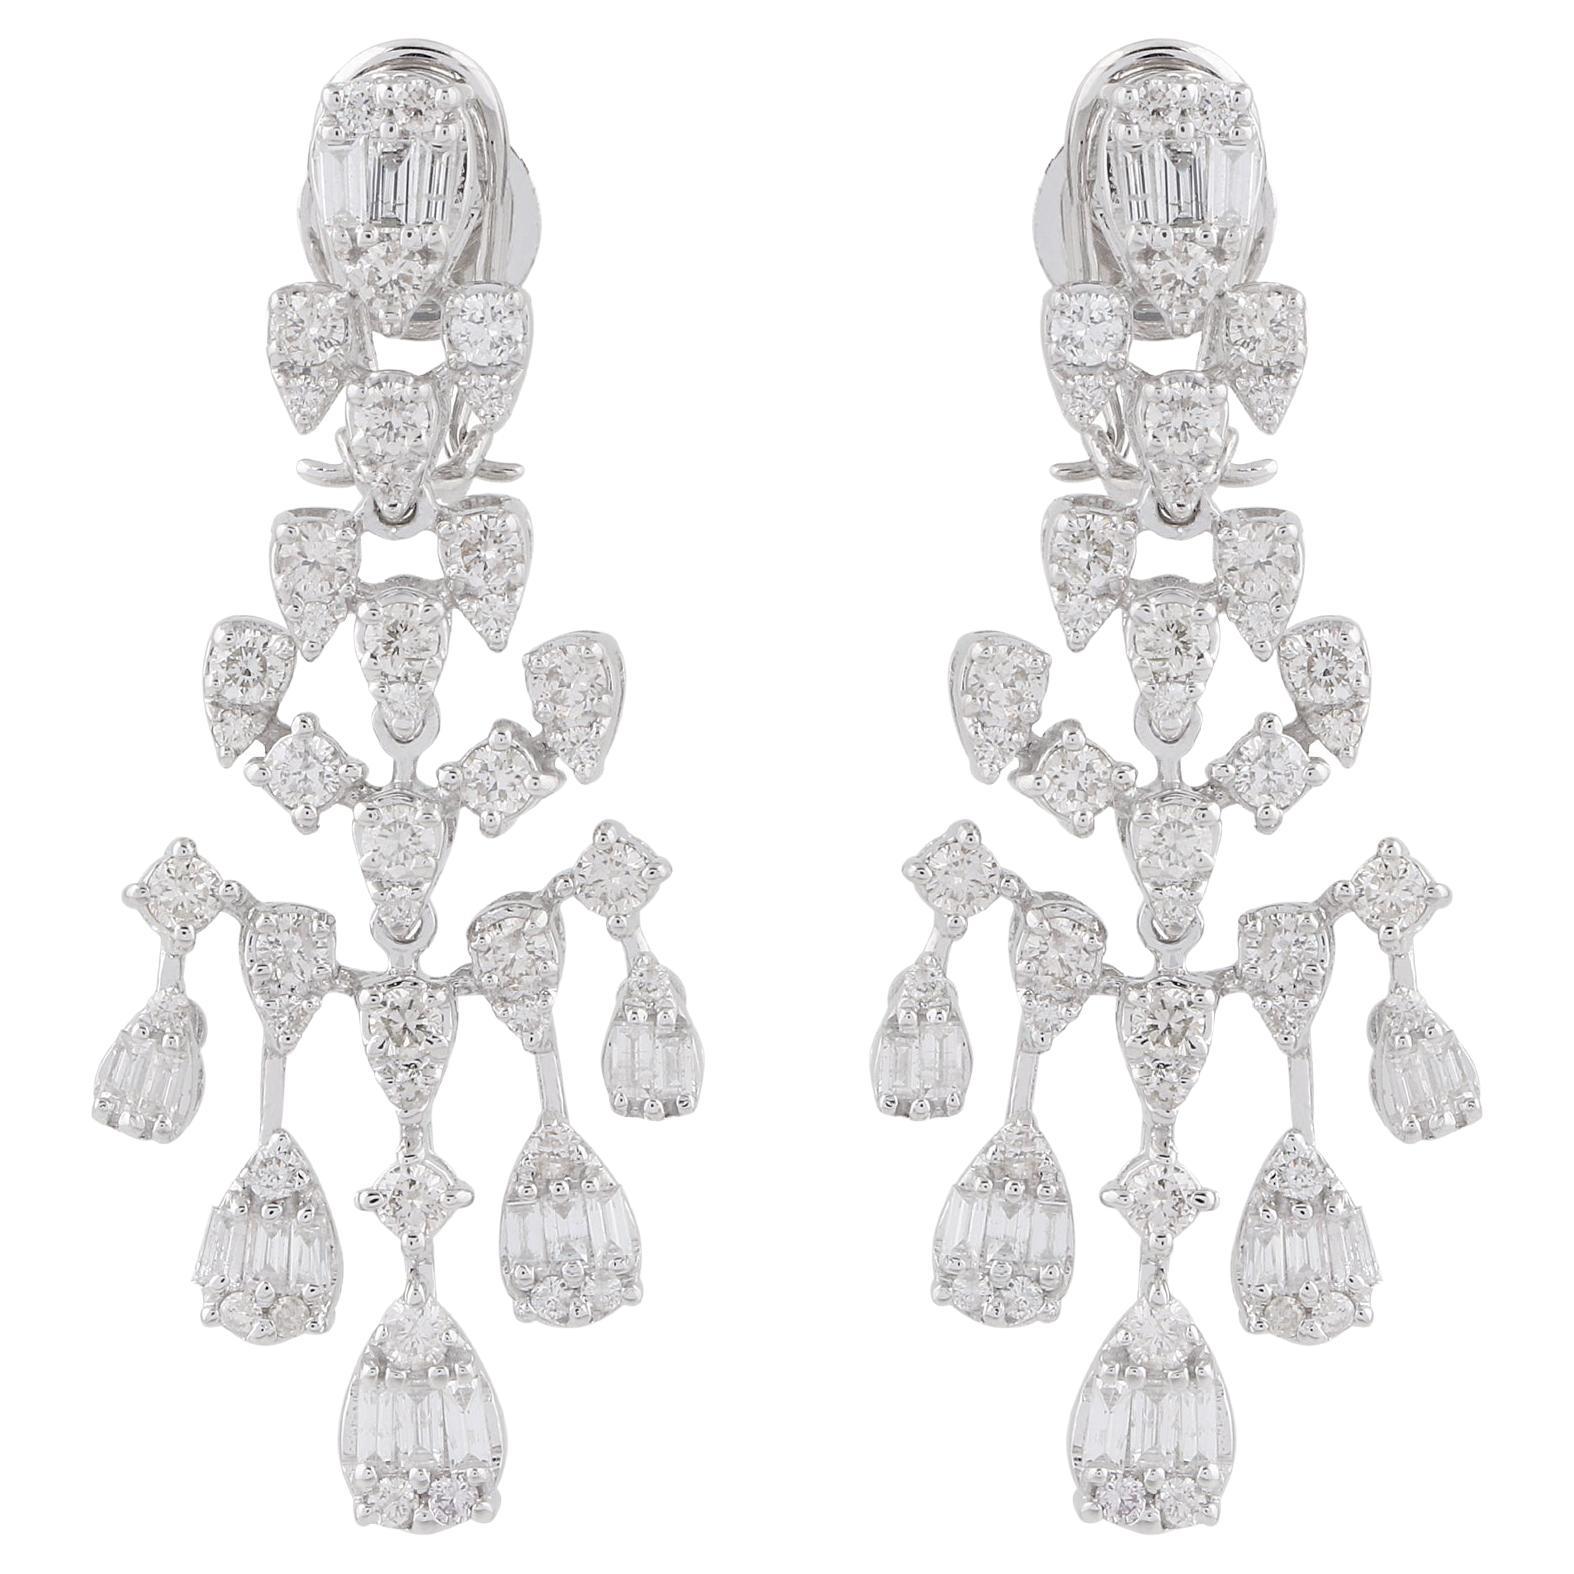 SI/HI Baguette Round Diamond Chandelier Earrings 18 Karat White Gold Jewelry